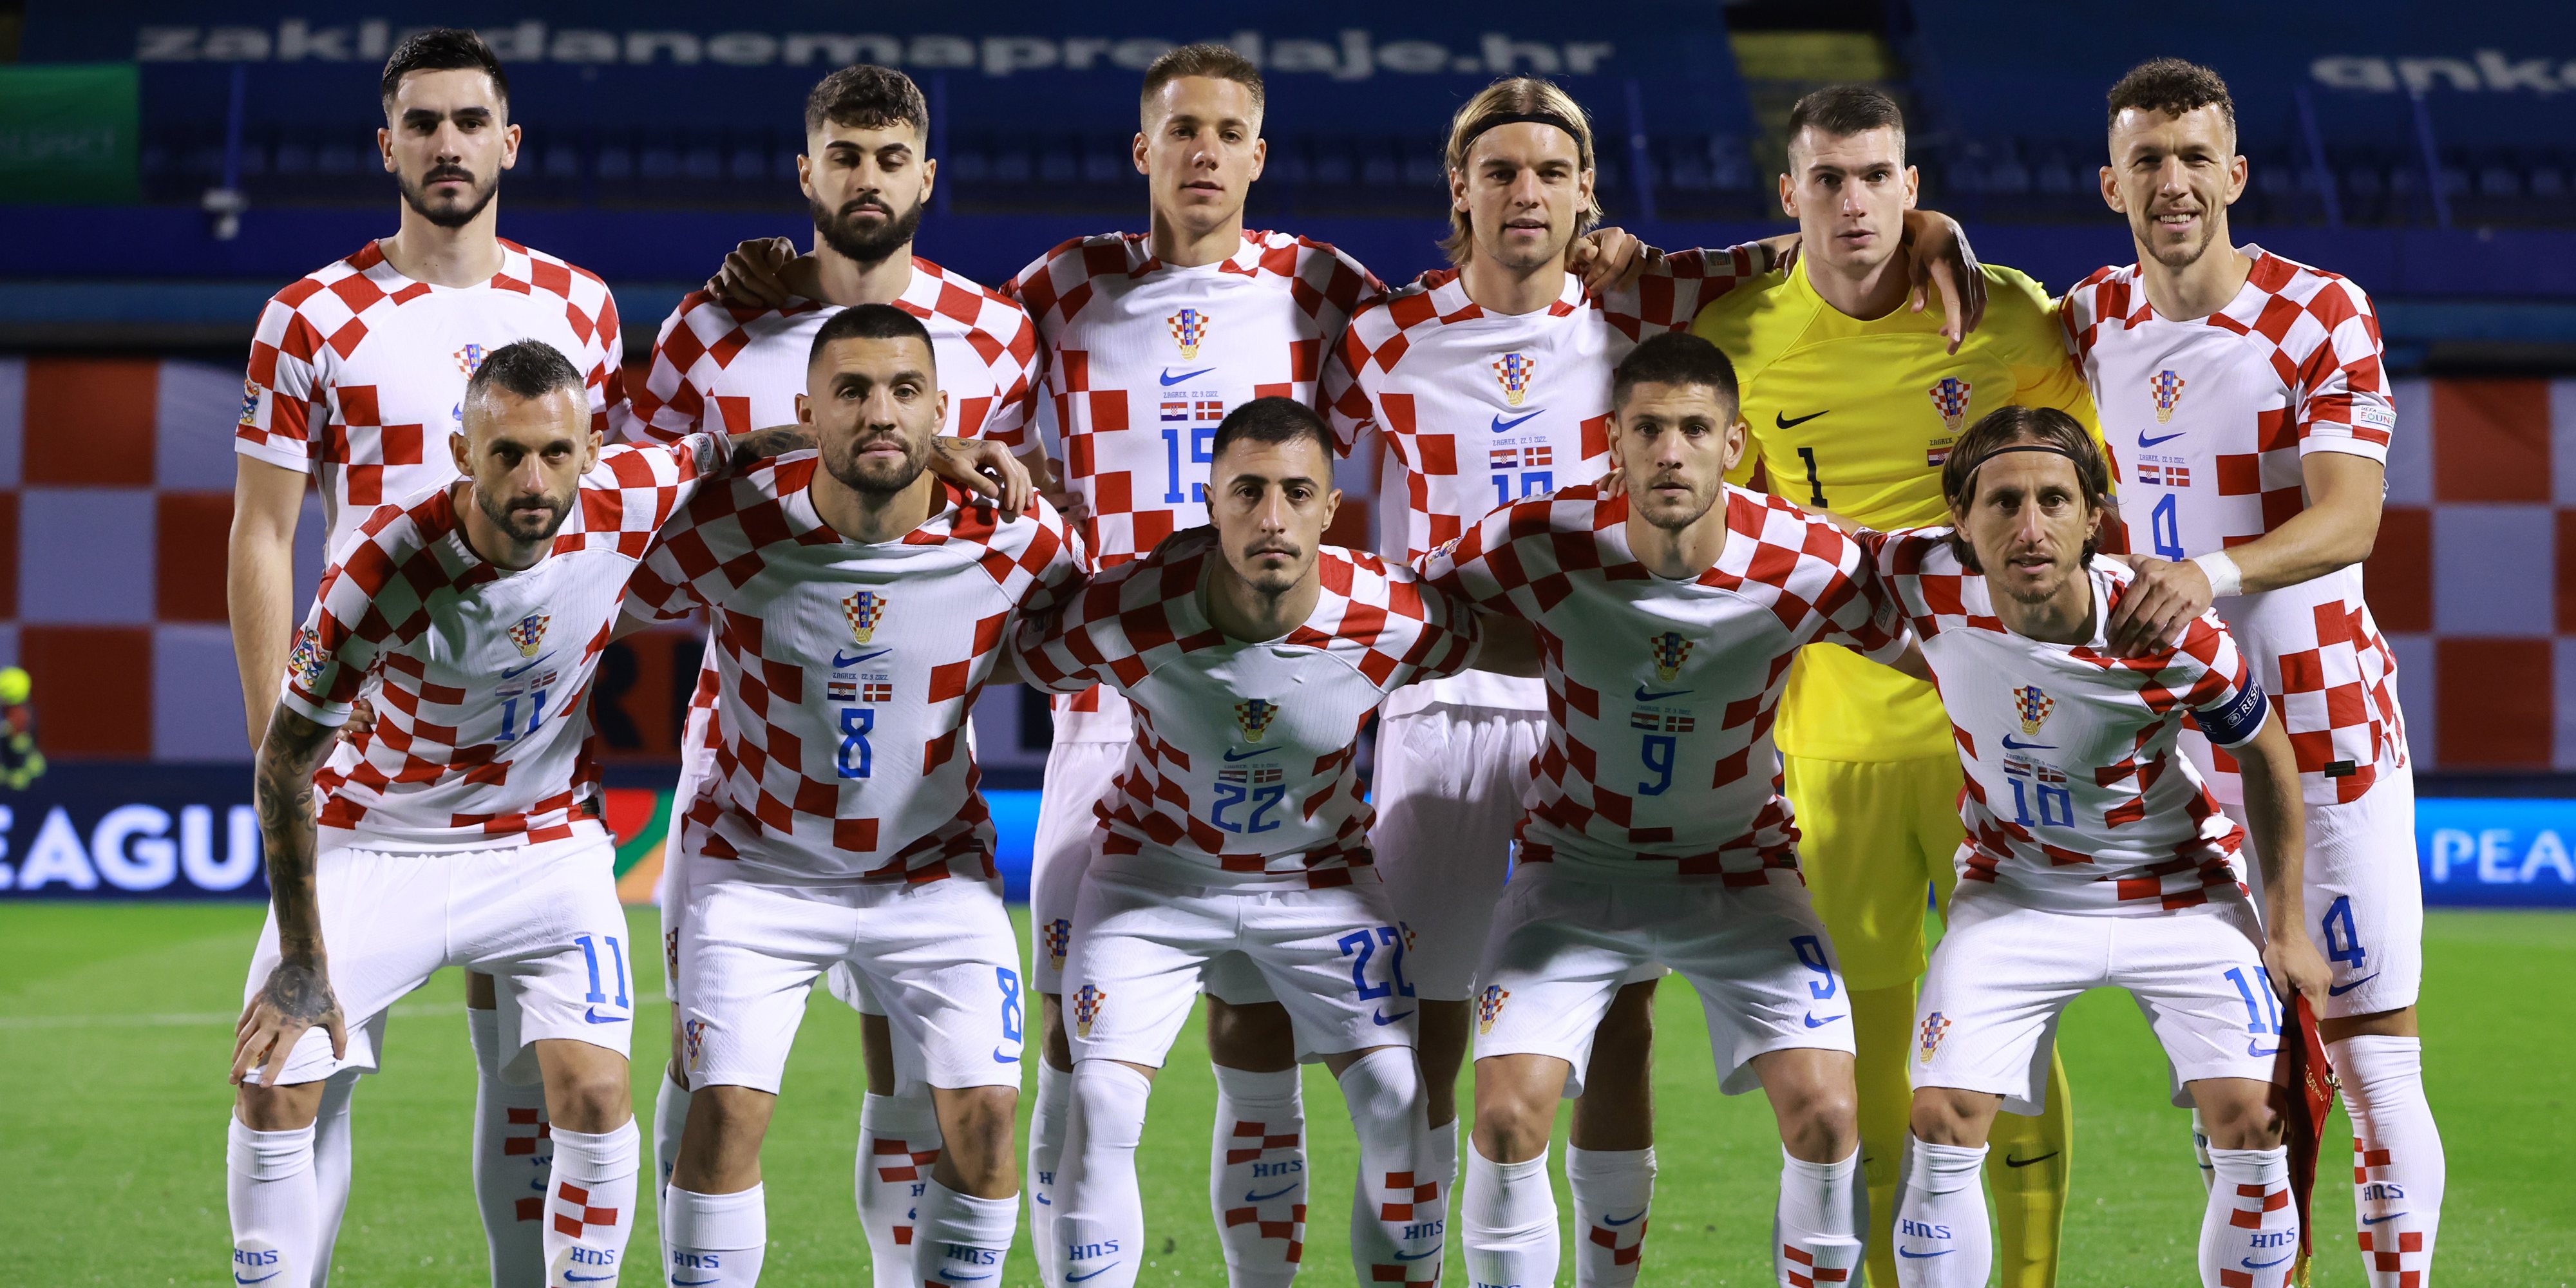 Descubra a Croácia – Croacia